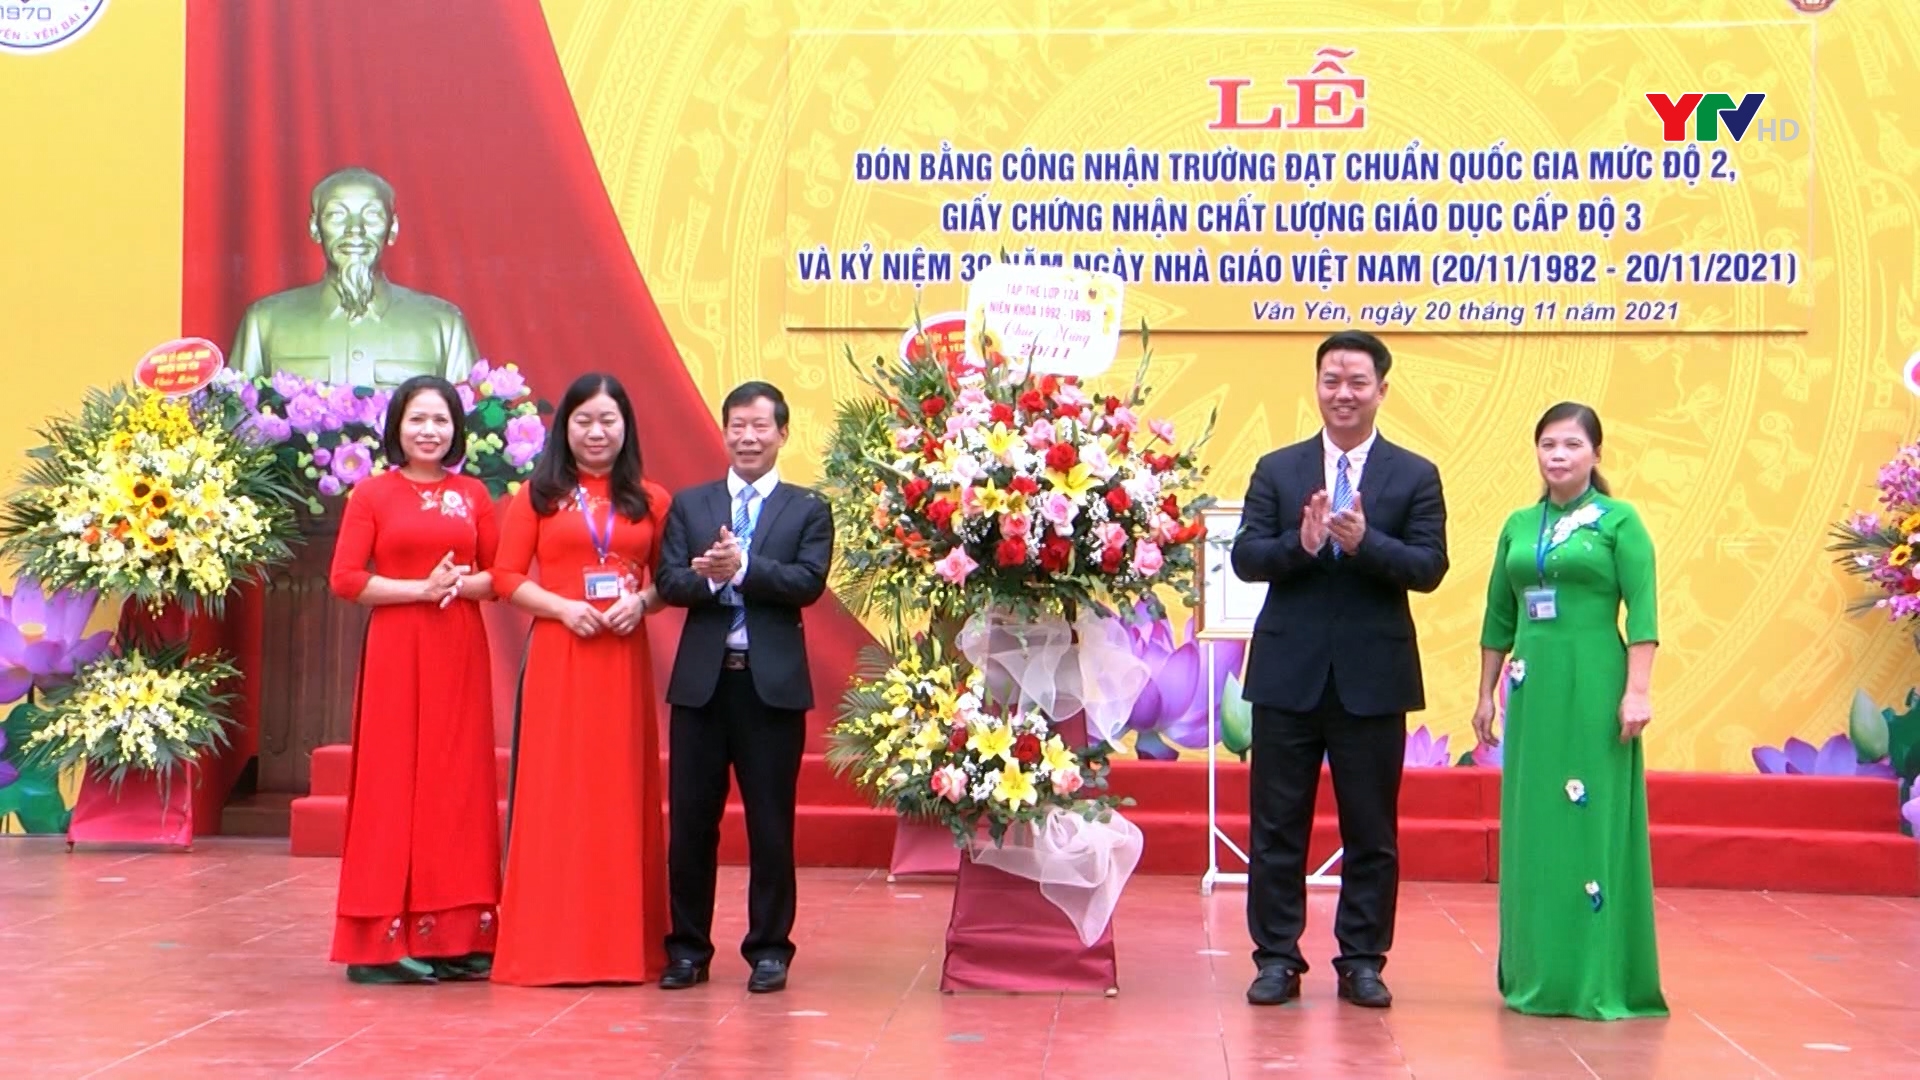 Trường THPT Chu Văn An, huyện Văn Yên đón Bằng công nhận trường đạt chuẩn quốc gia mức độ 2